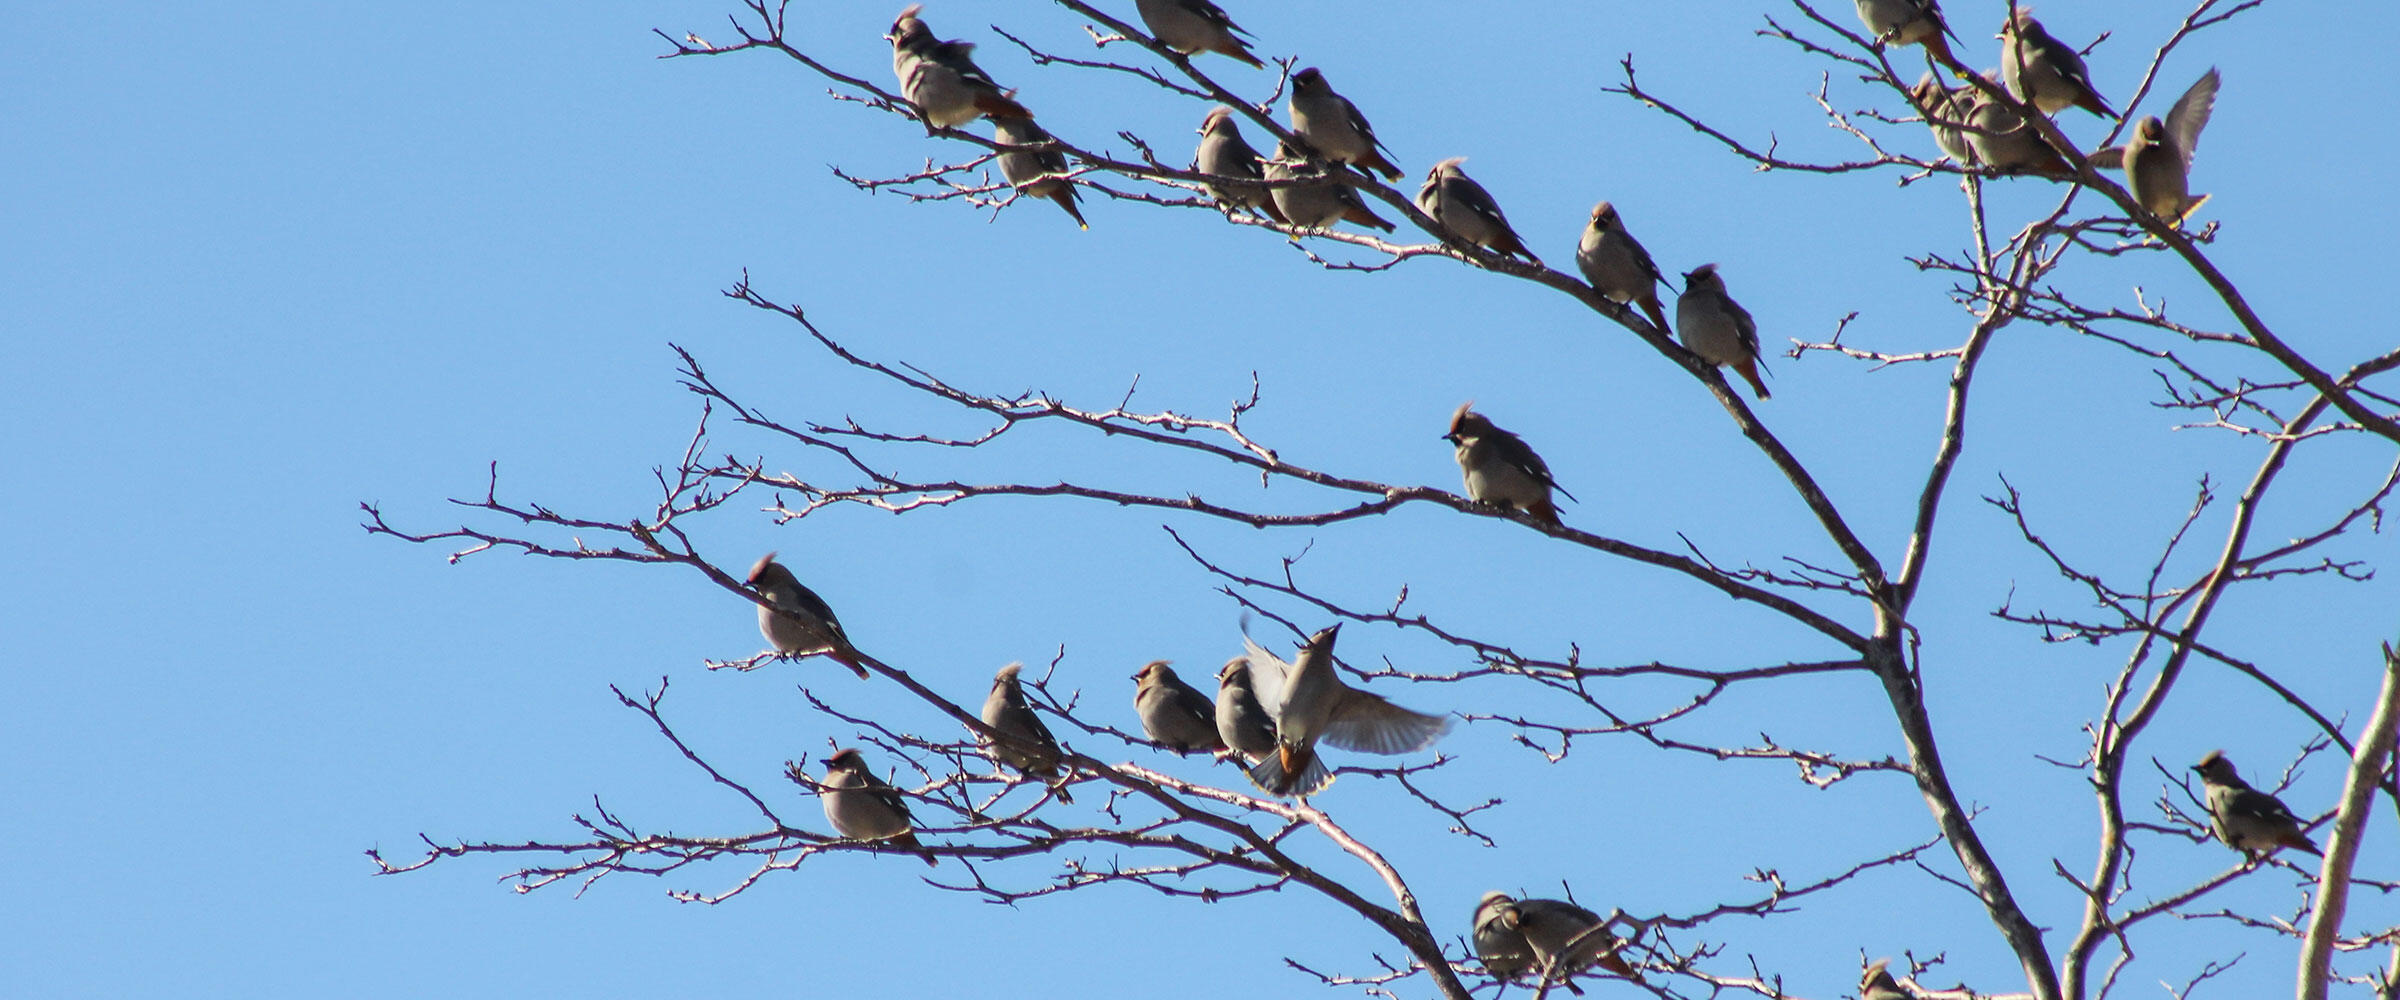 Flock of Bohemian Waxwings in a tree.